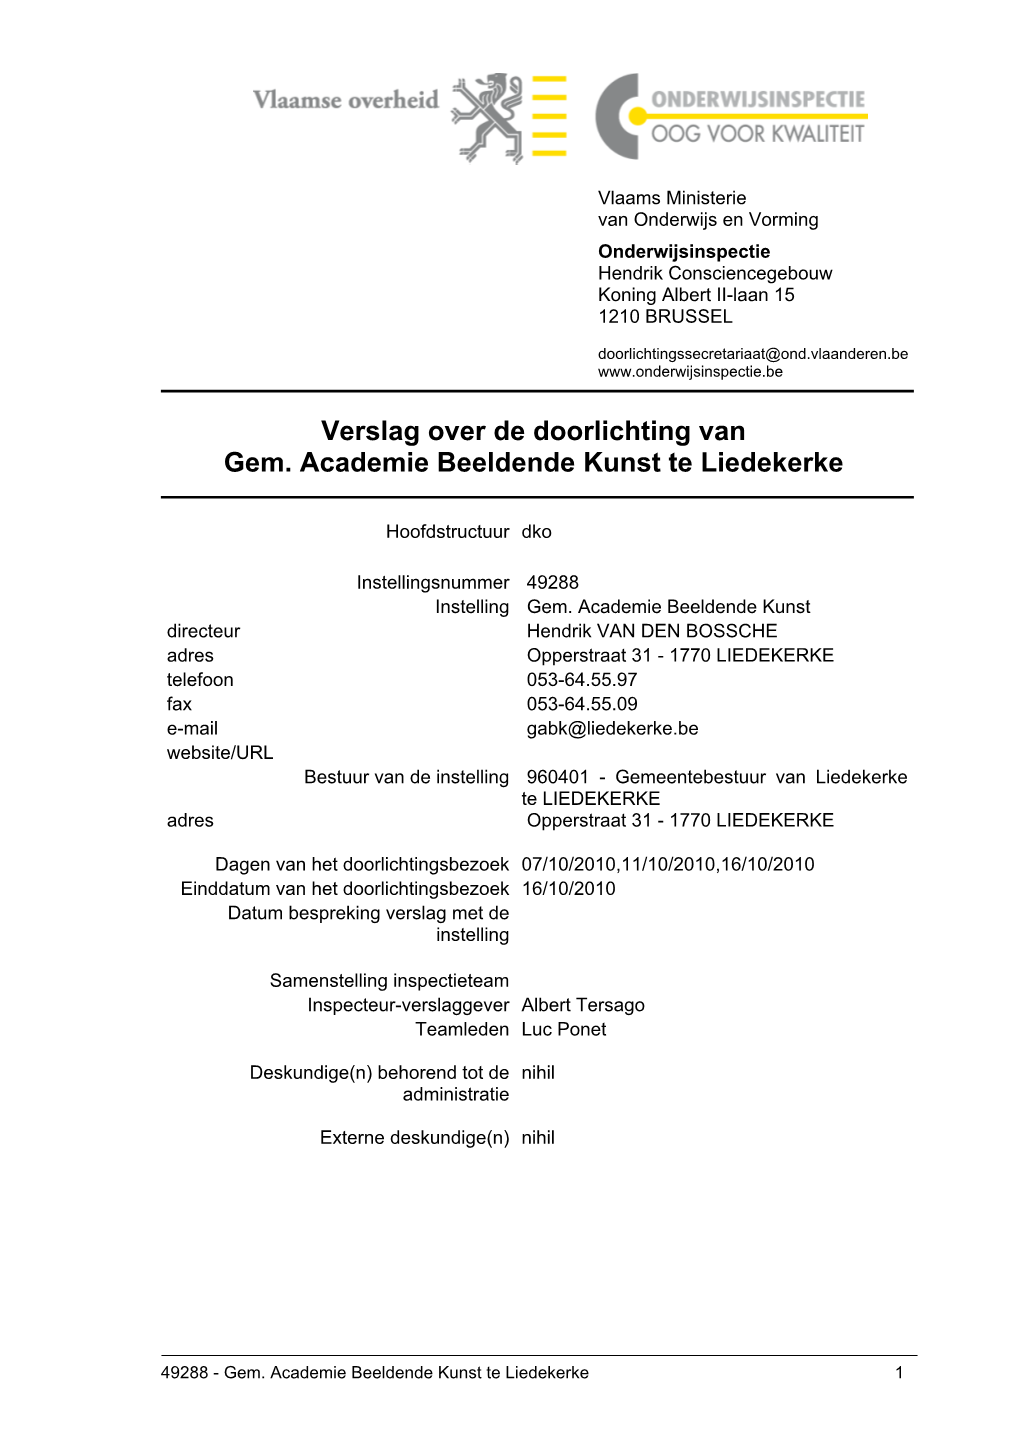 Verslag Over De Doorlichting Van Gem. Academie Beeldende Kunst Te Liedekerke